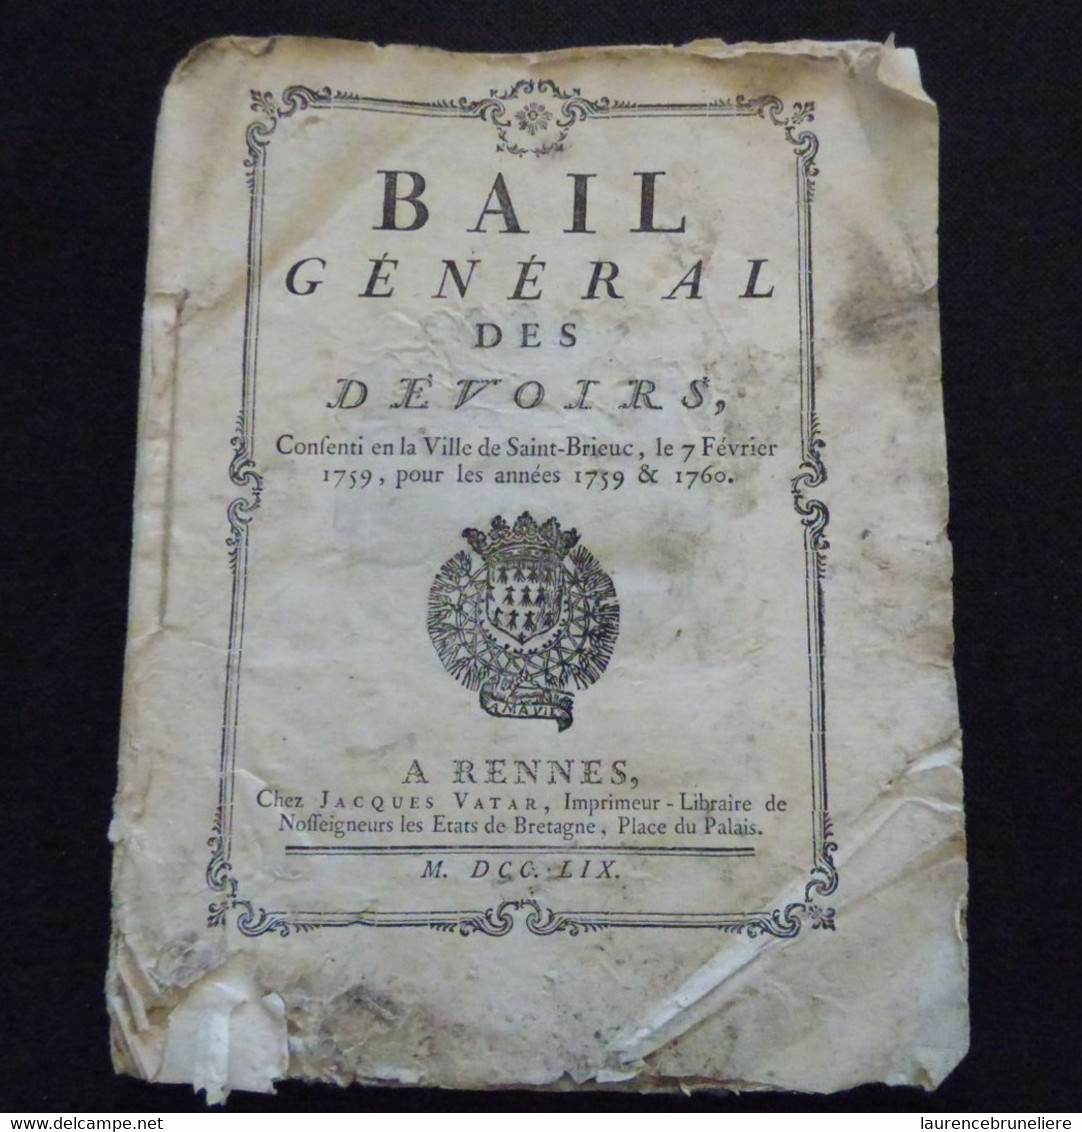 BAIL GENERAL DES DEVOIRS CONSENTI EN LA VILLE DE SAINT-BRIEUC LE 7 FEVRIER 1759 SUR PAPIER PARCHEMIN - Historische Dokumente